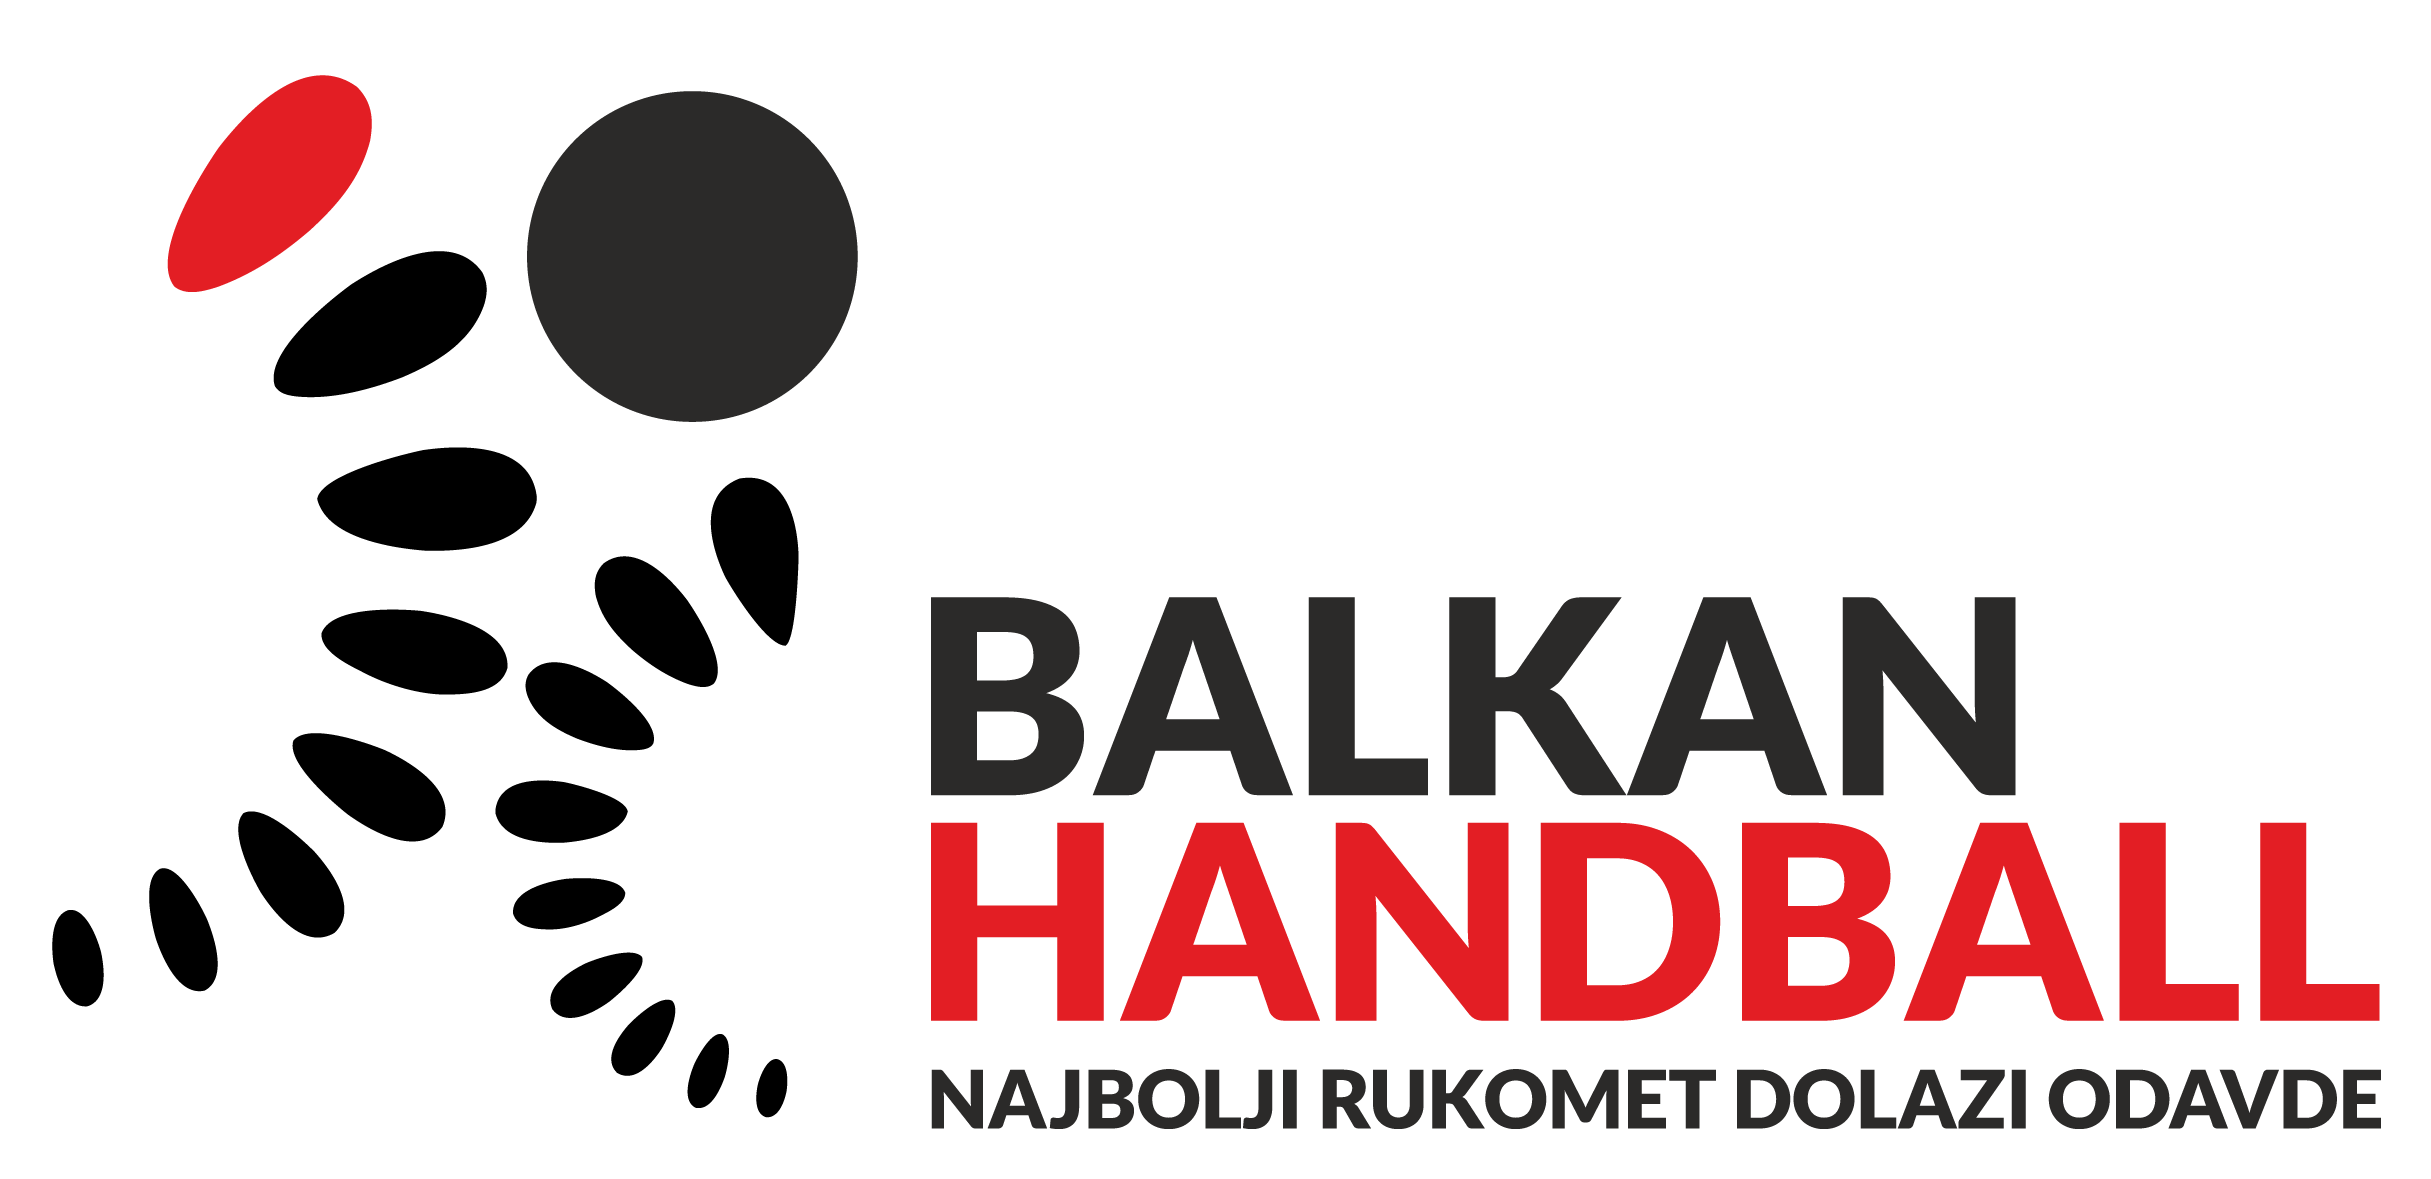 Balkan Handball